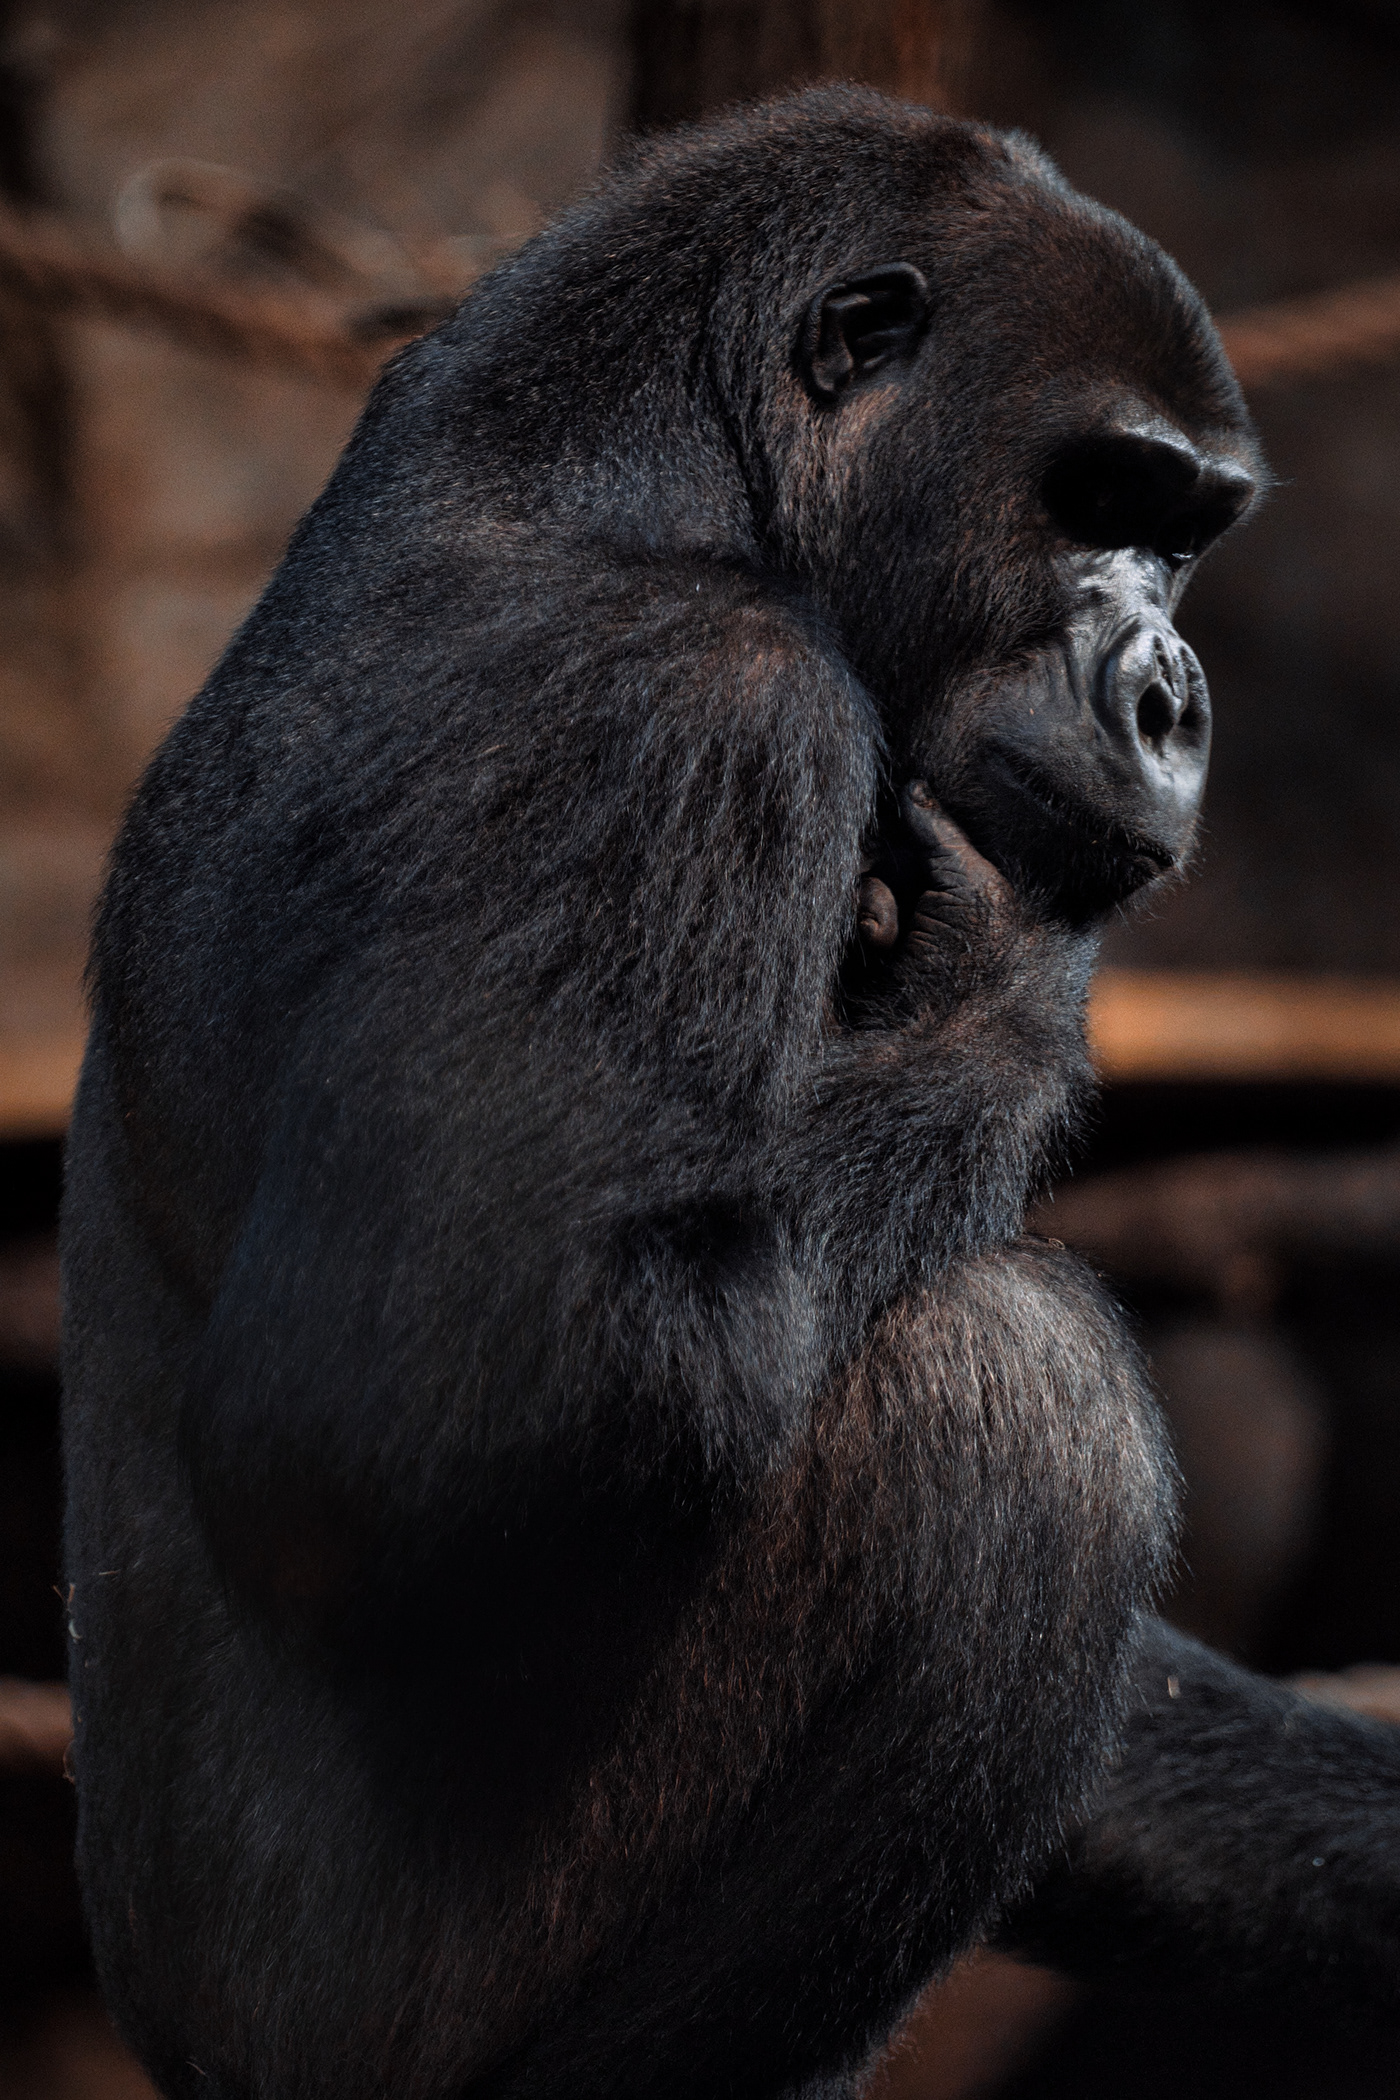 animals bear Gibbons gorilla monkeys Nature Photography  wildlife zoo